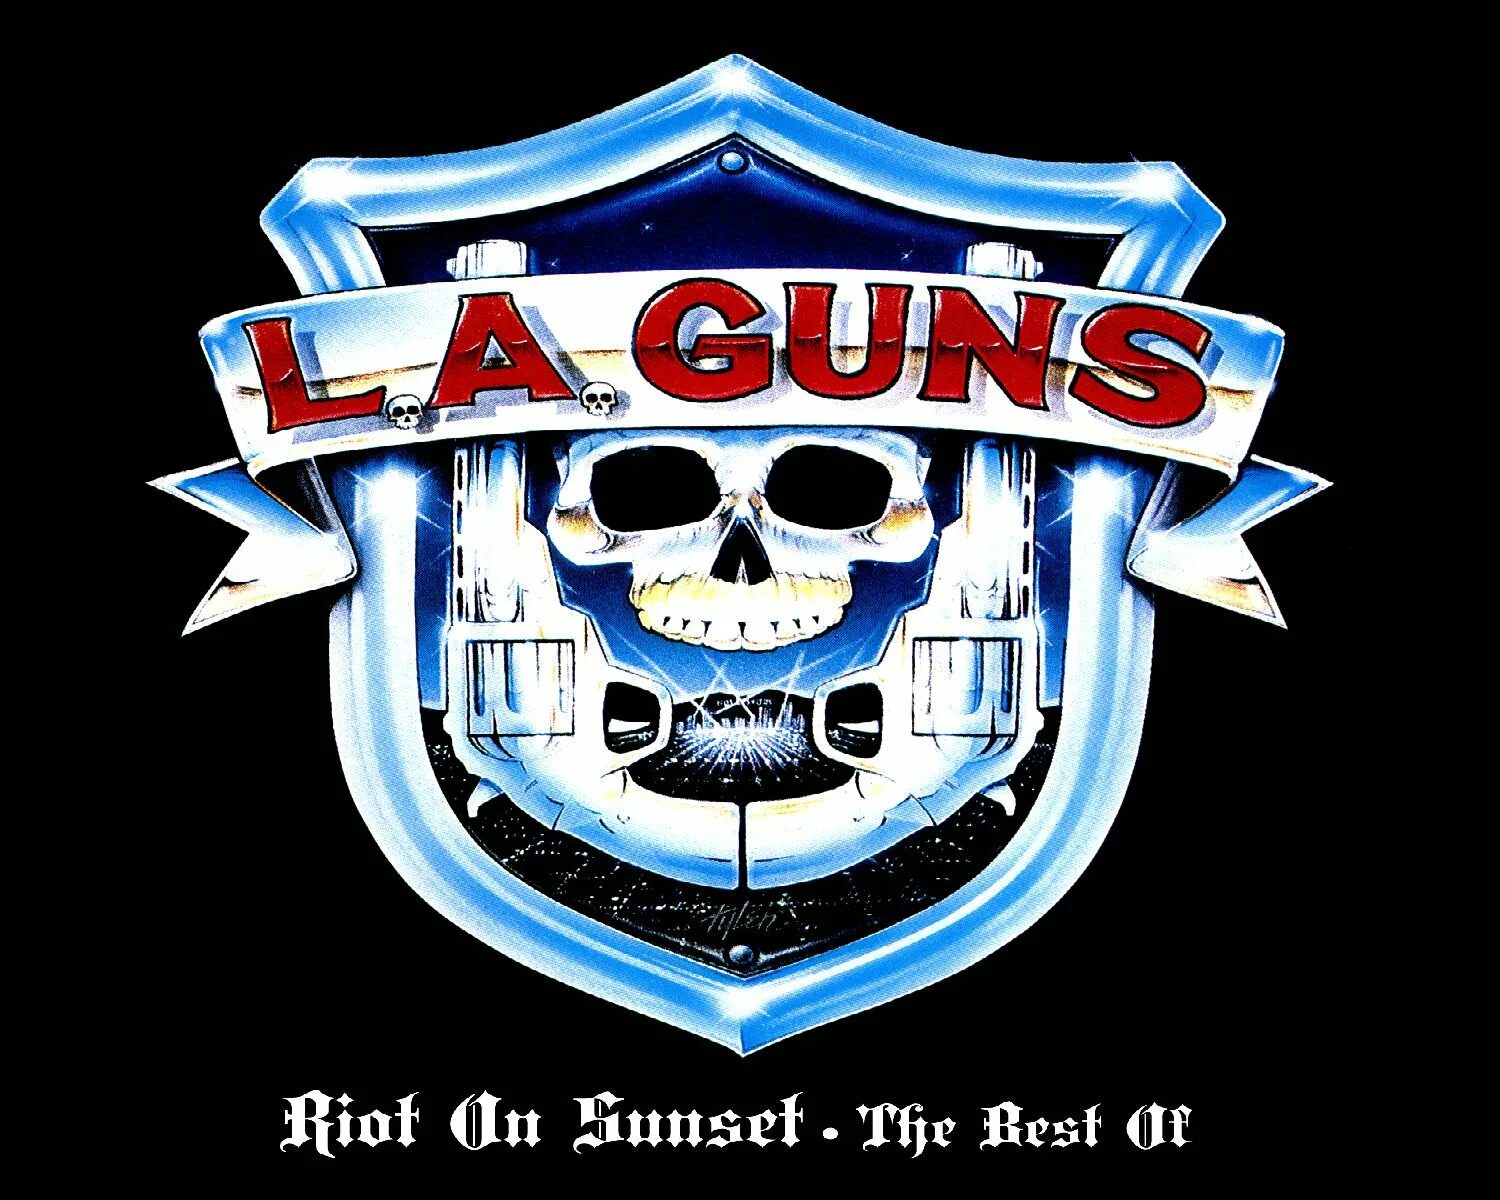 L.A. Guns. L.A Guns лого. L.A. Guns обложки альбомов. La Guns 1988.